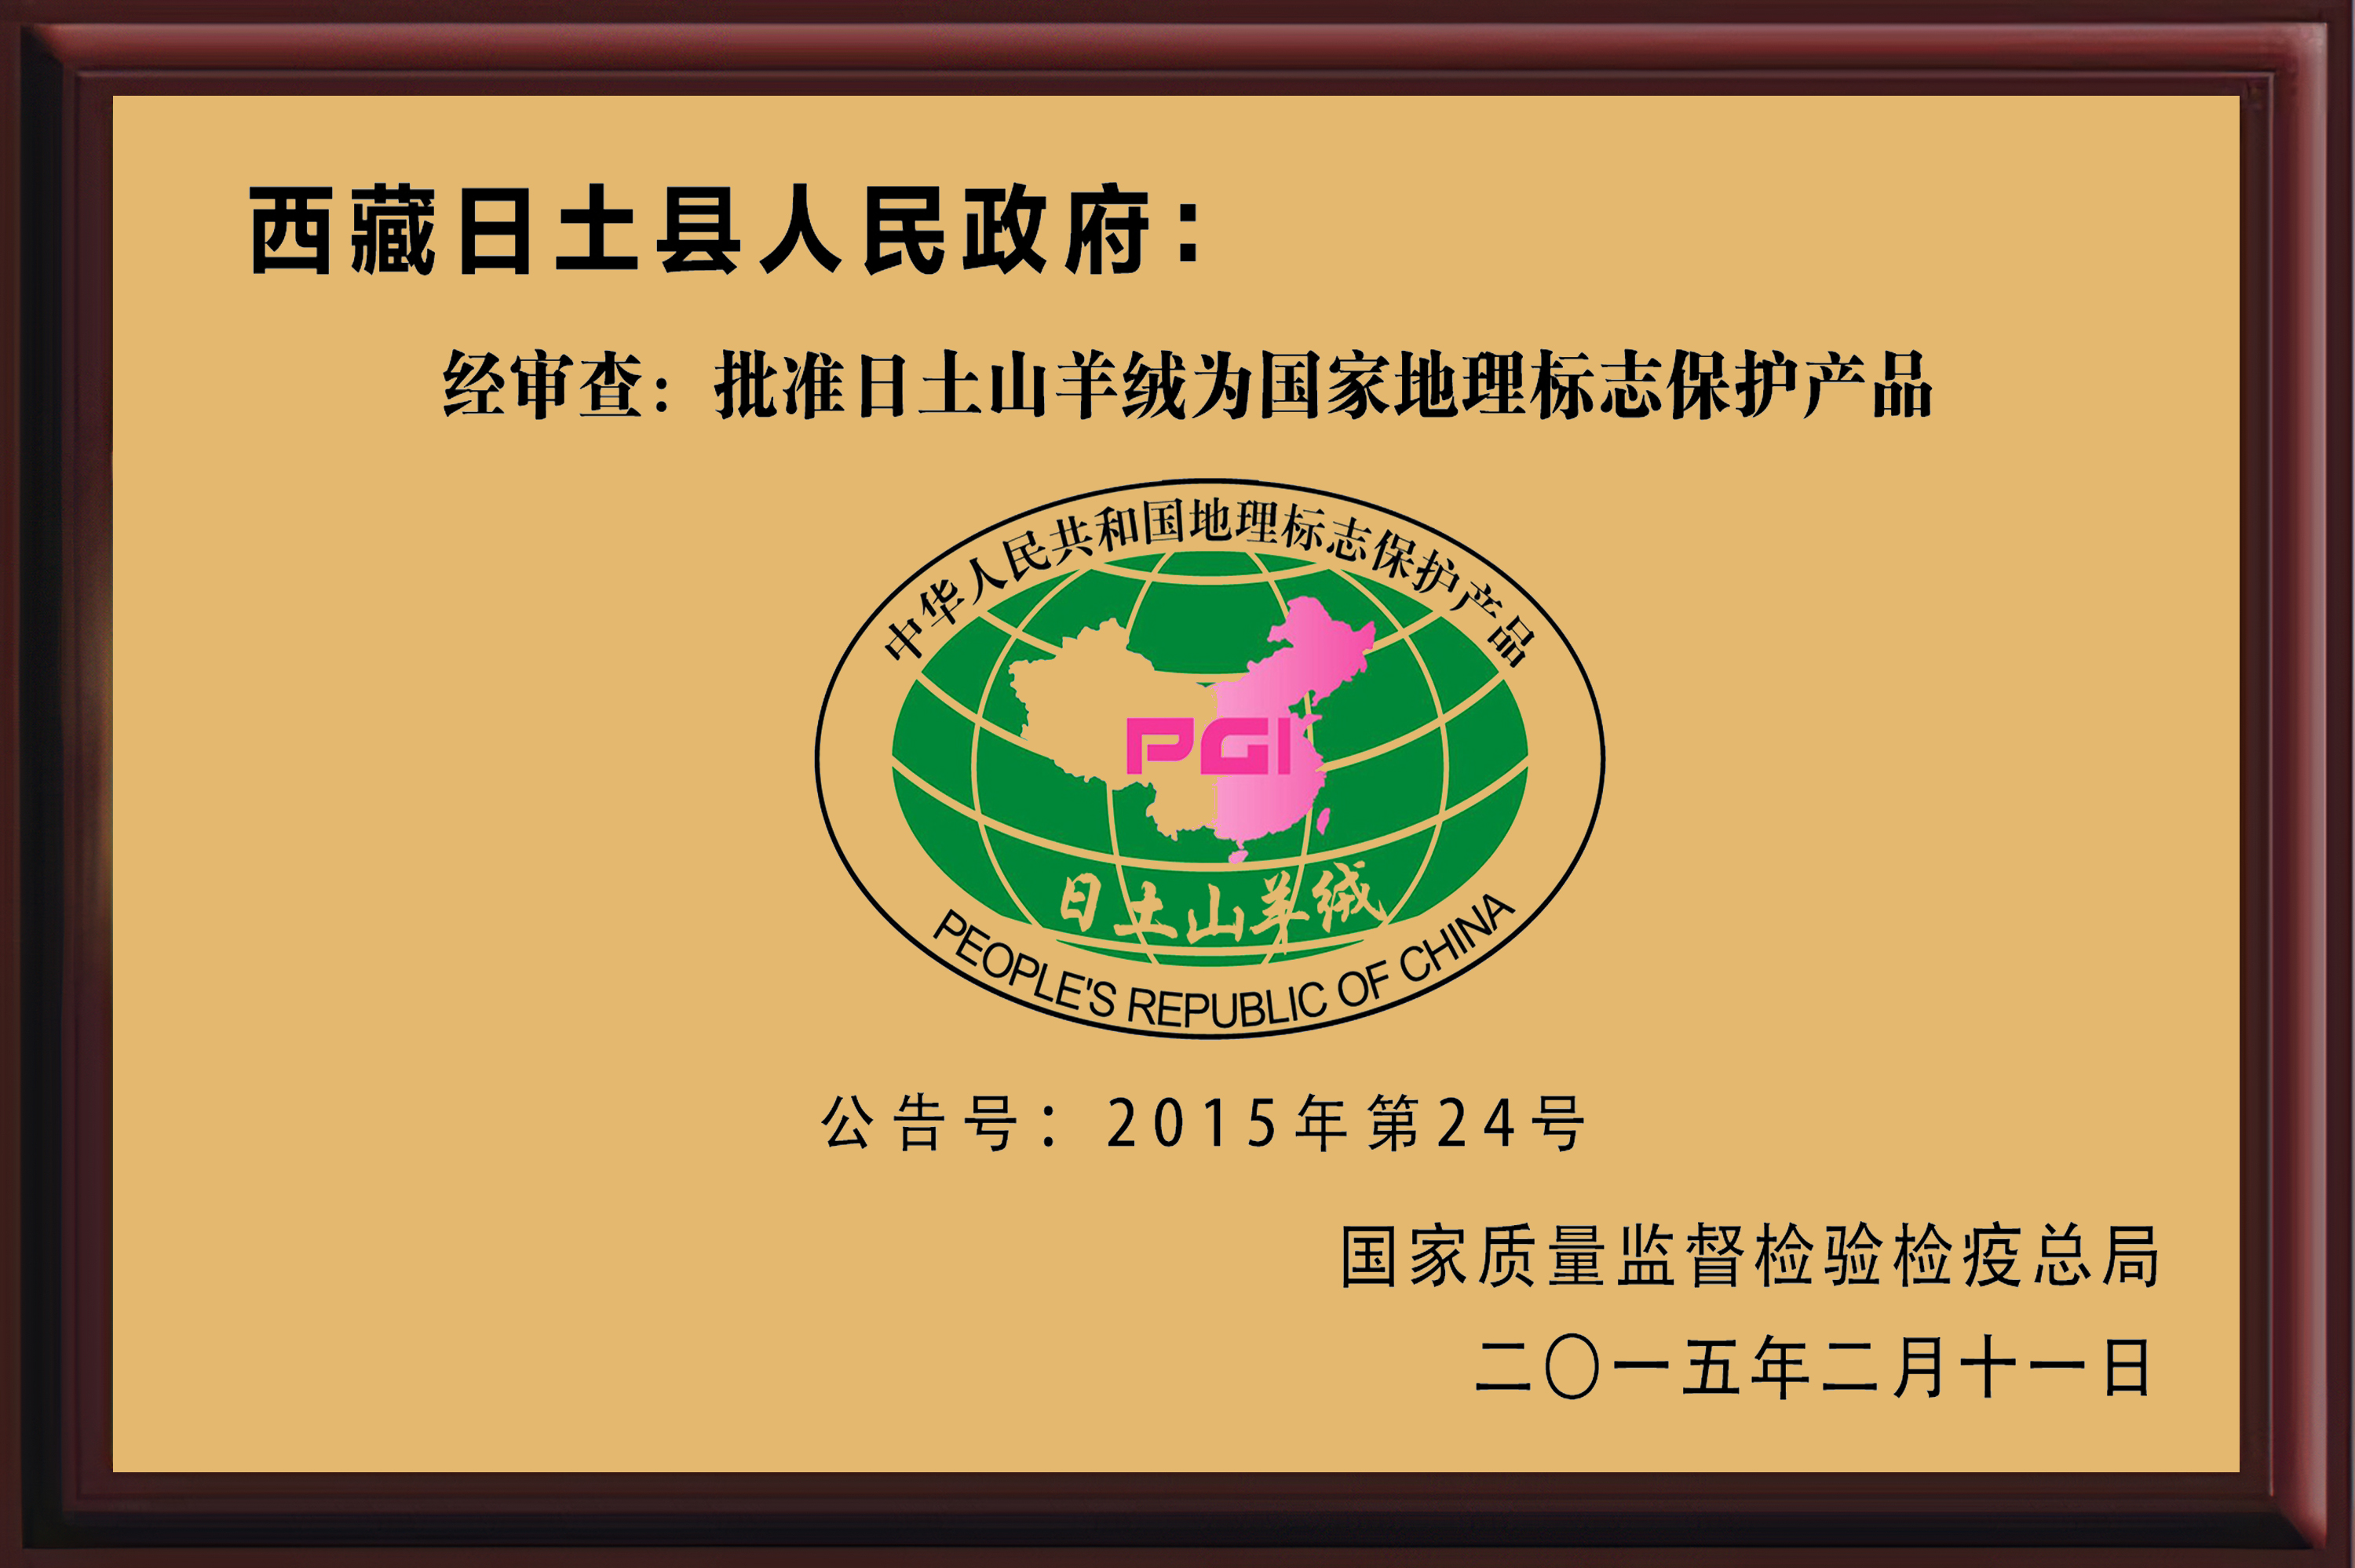 国家地理标志保护民族希望米皇集团领军中国羊绒创民族品牌